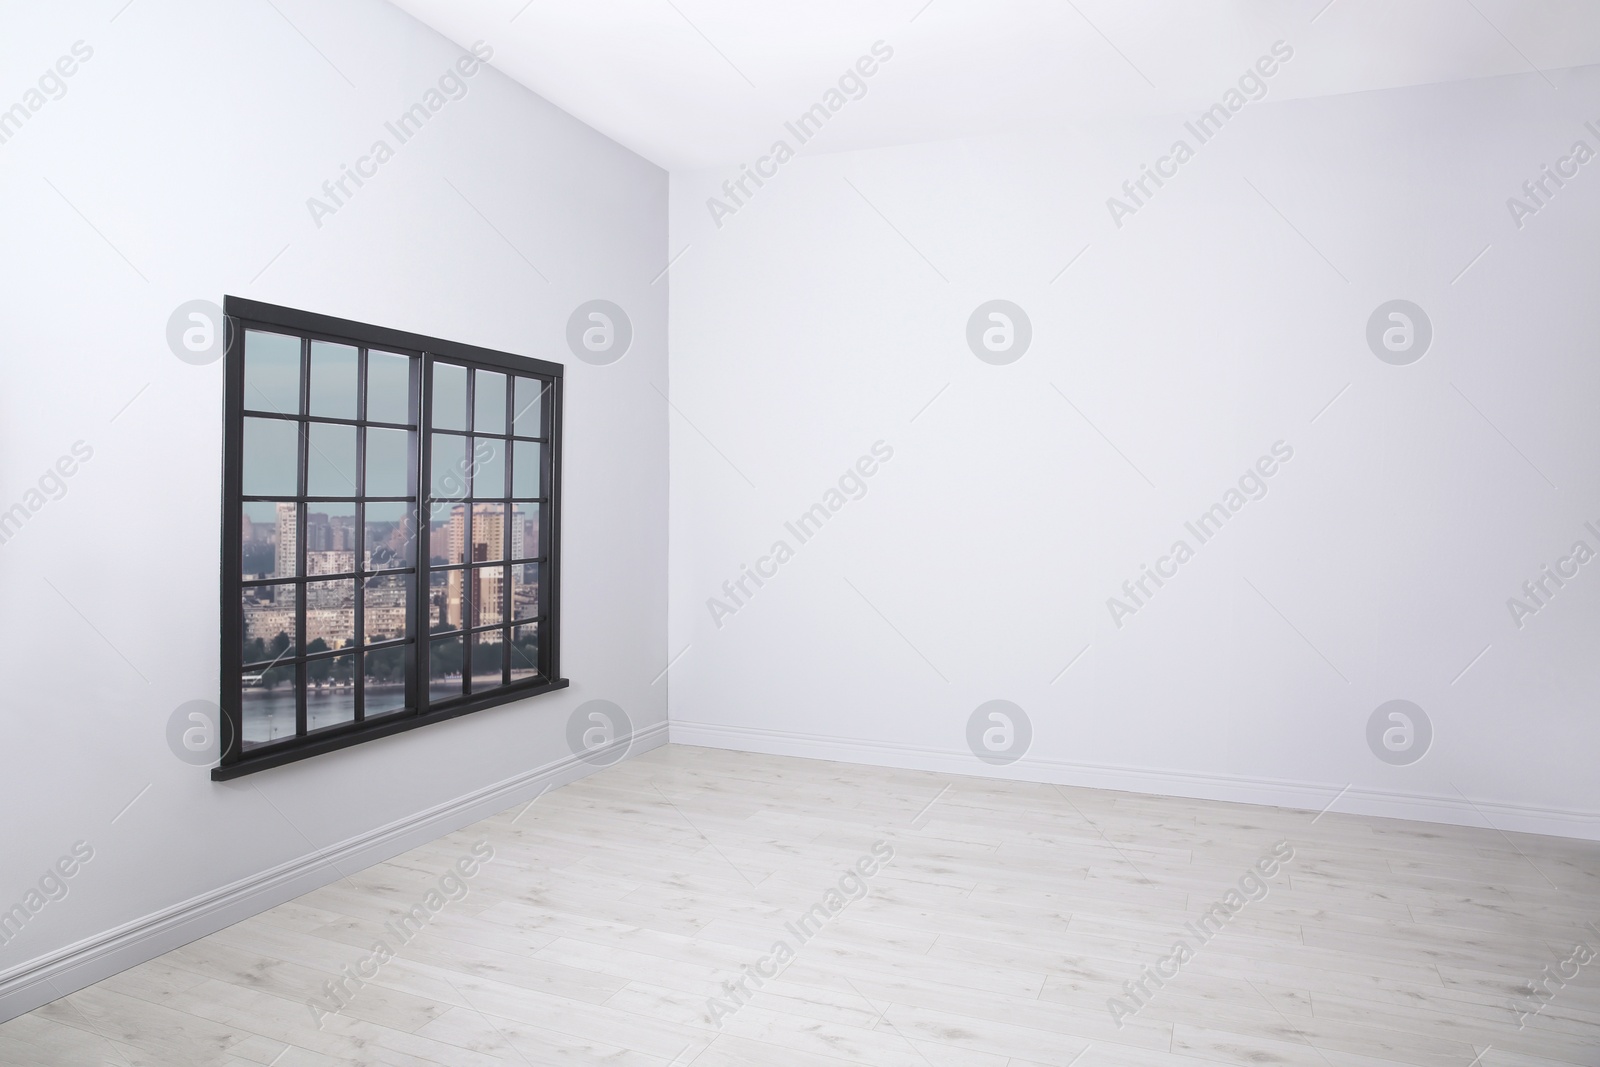 Photo of Parquet floor and wooden window in light empty room